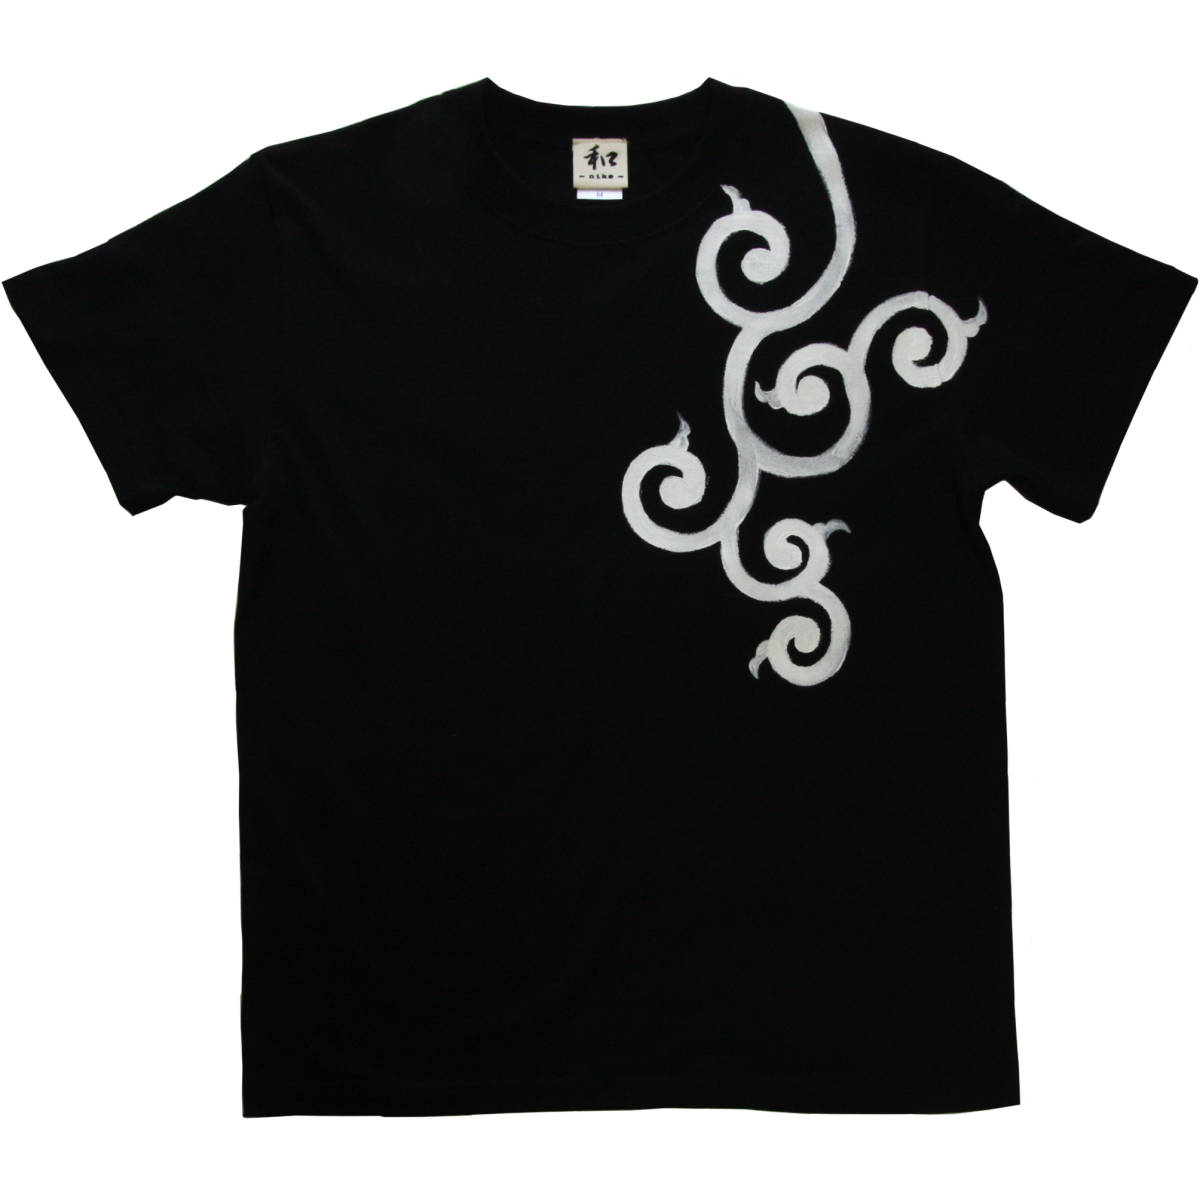 メンズ Tシャツ Mサイズ 黒 唐草柄Tシャツ ブラック ハンドメイド 手描きTシャツ 和柄, Mサイズ, 丸首, 柄もの